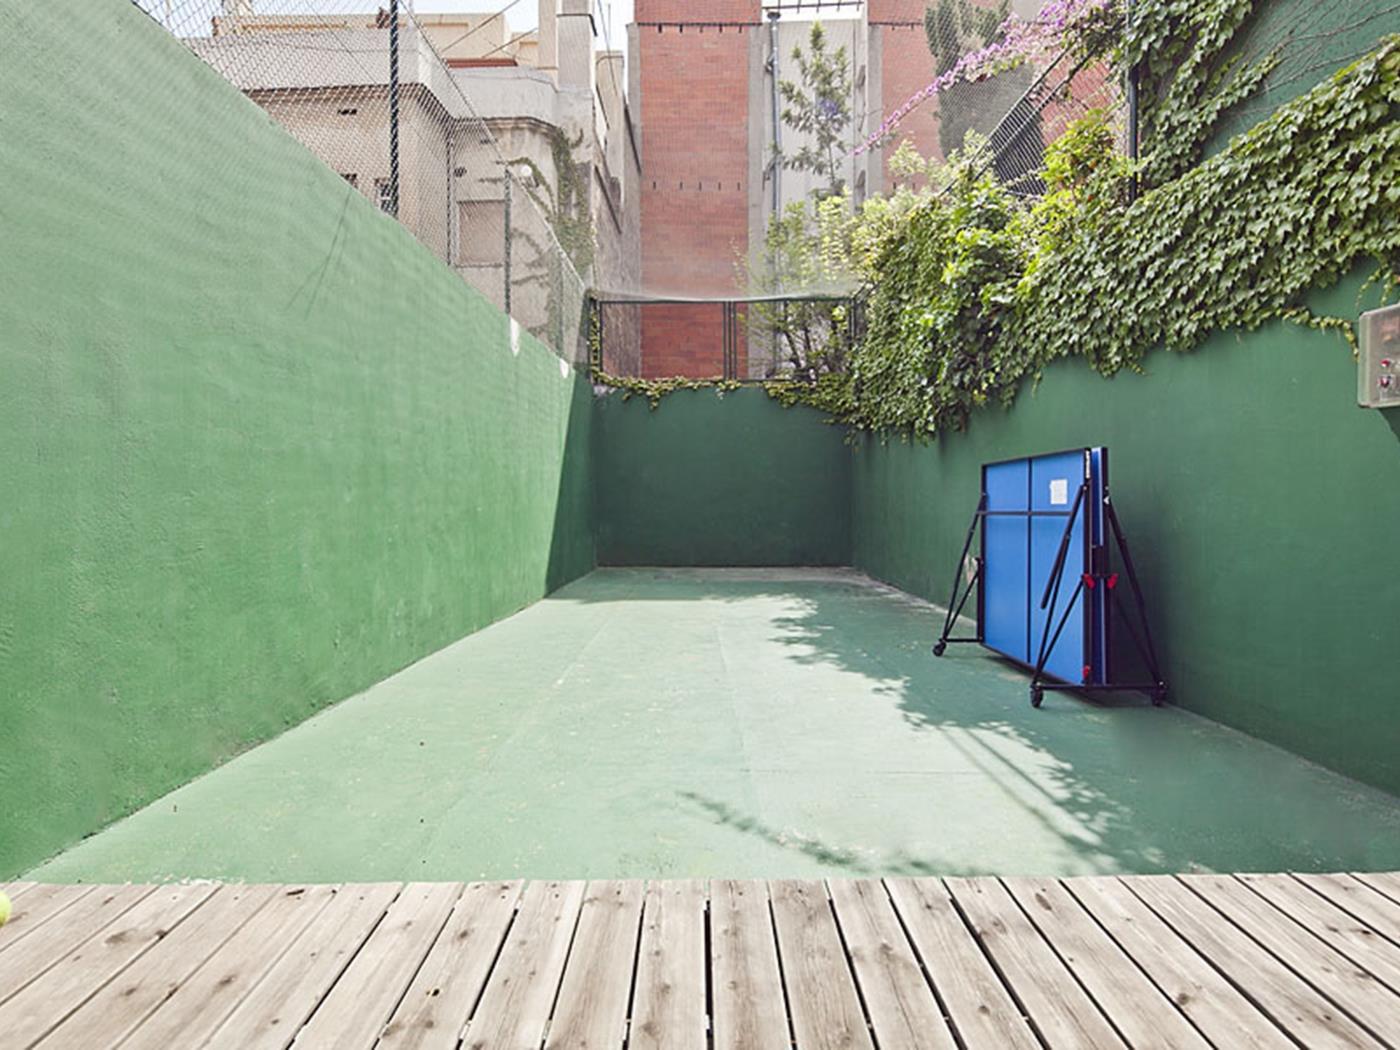 Maisonette Wohnung mit Schwimmbad in der nähe dem Zentrum, Putxet - My Space Barcelona Appartementen